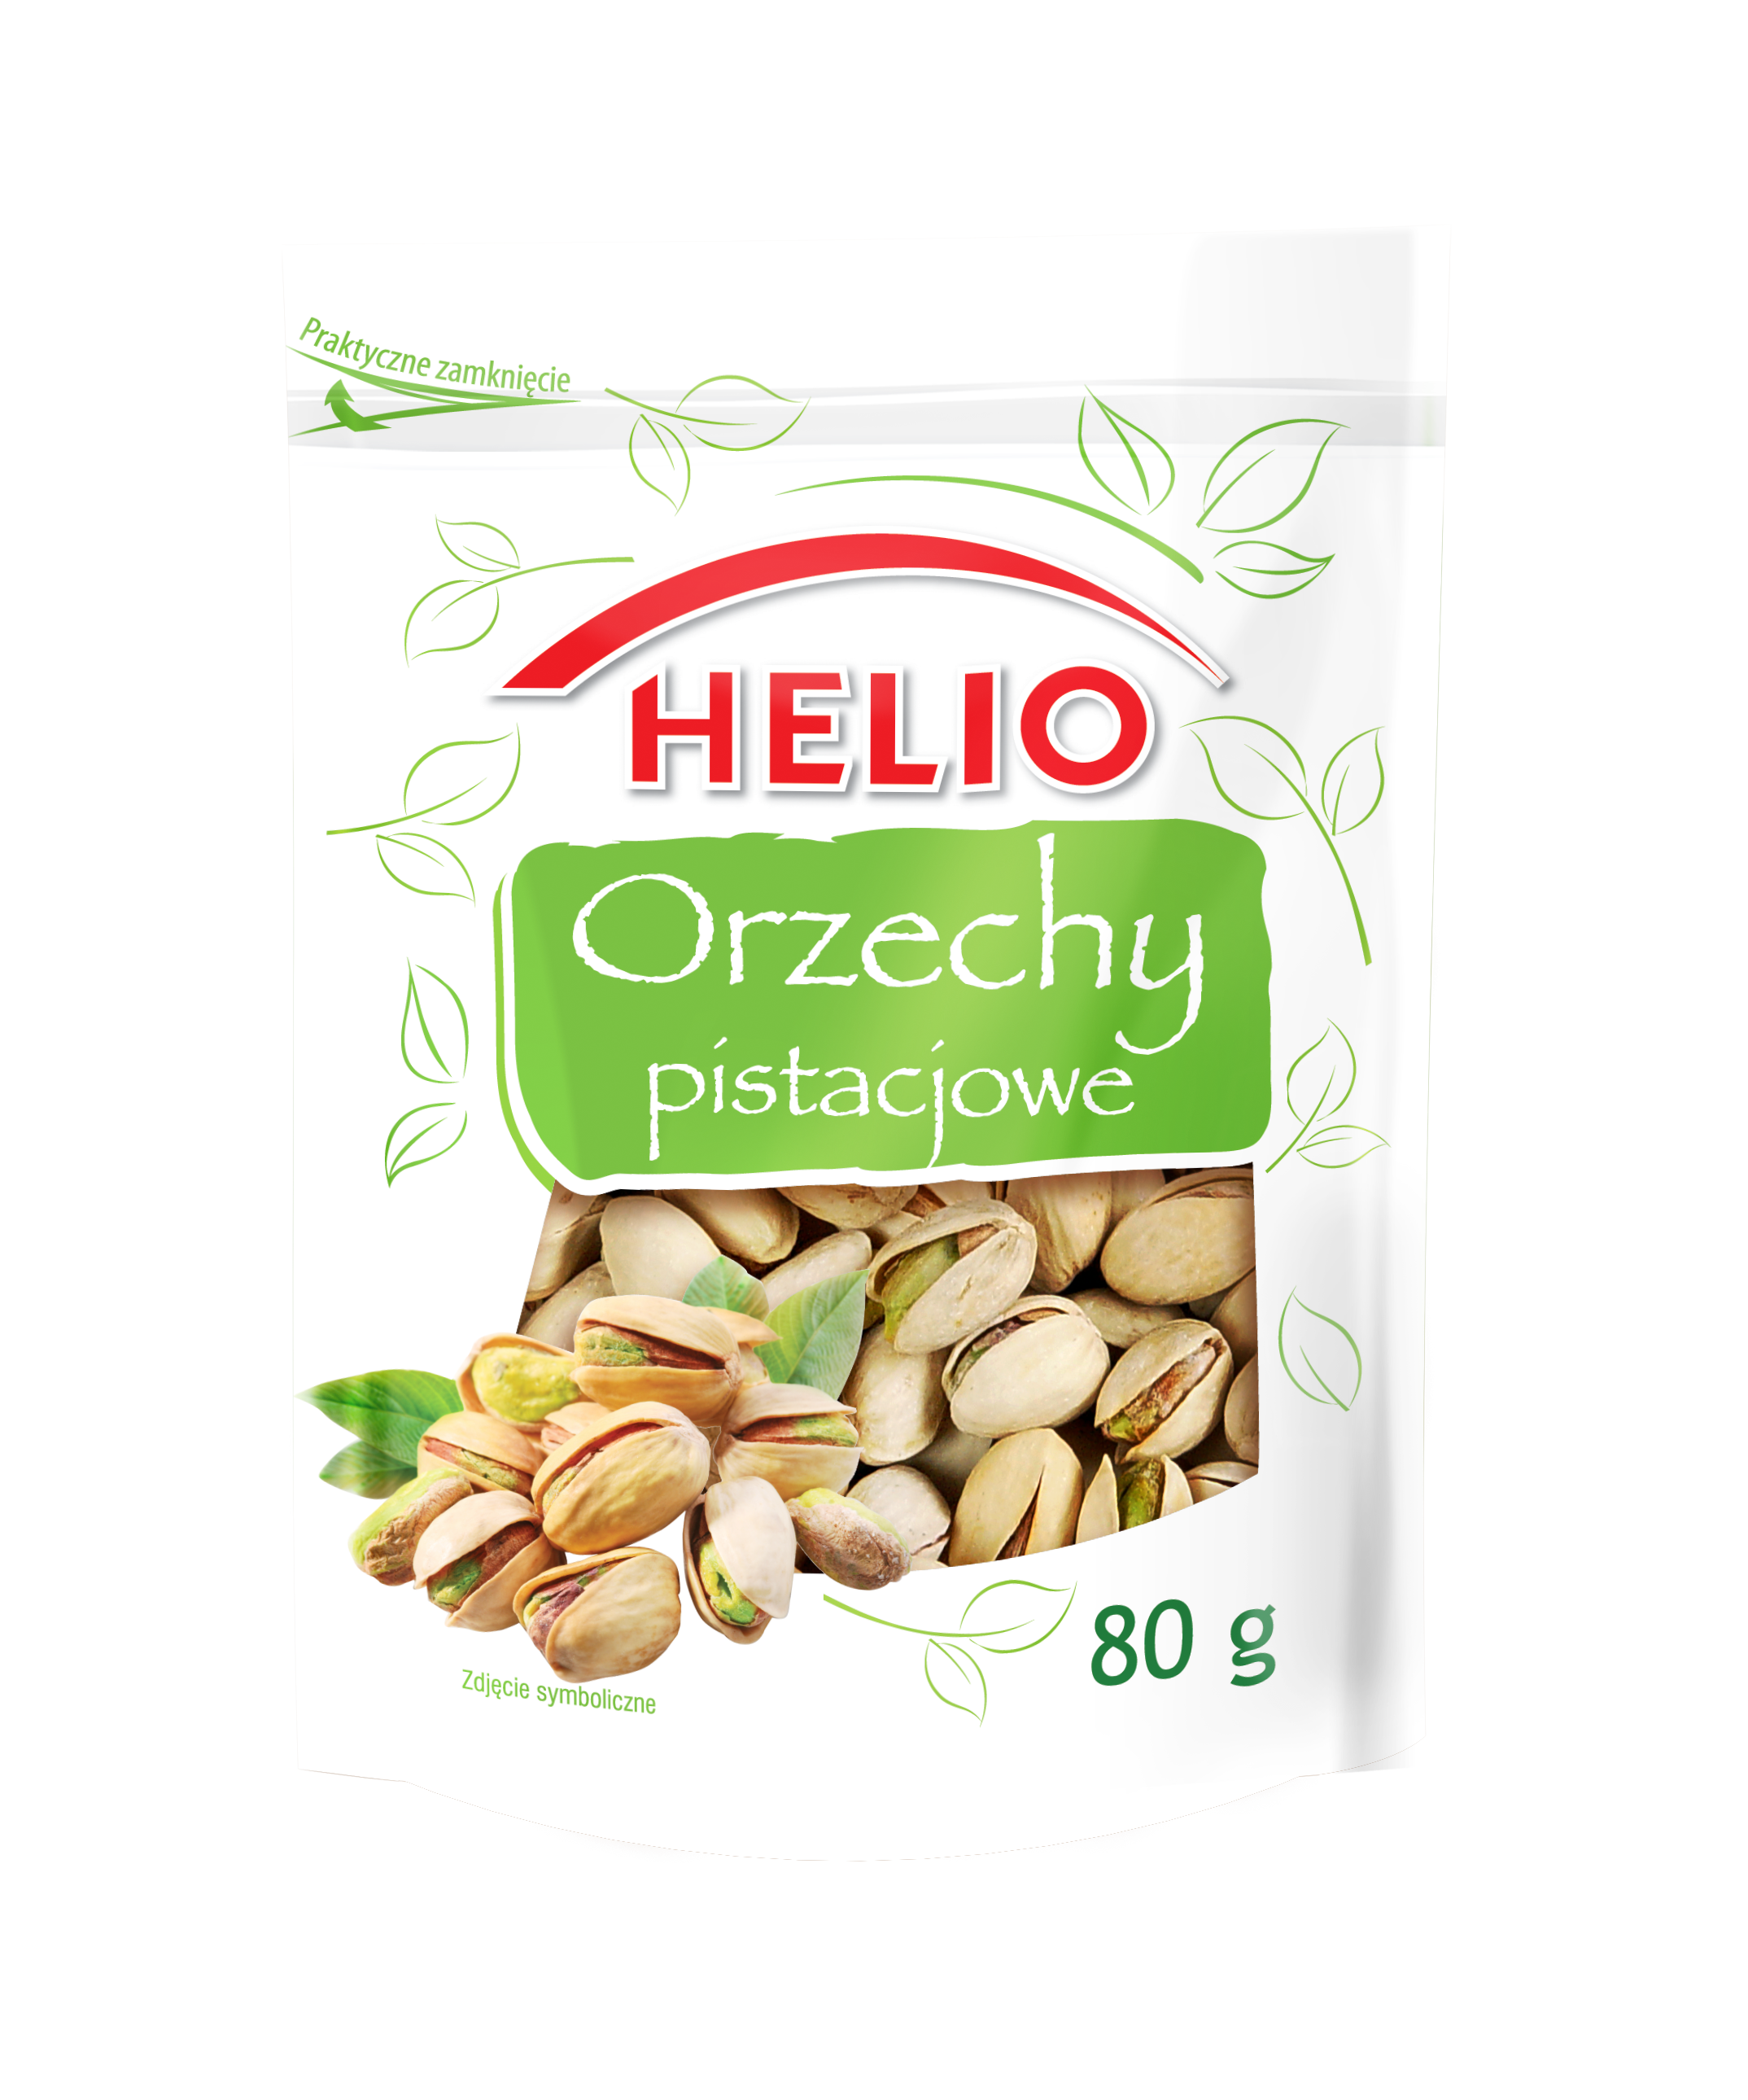 Helio Orzechy Pistacjowe 80 g